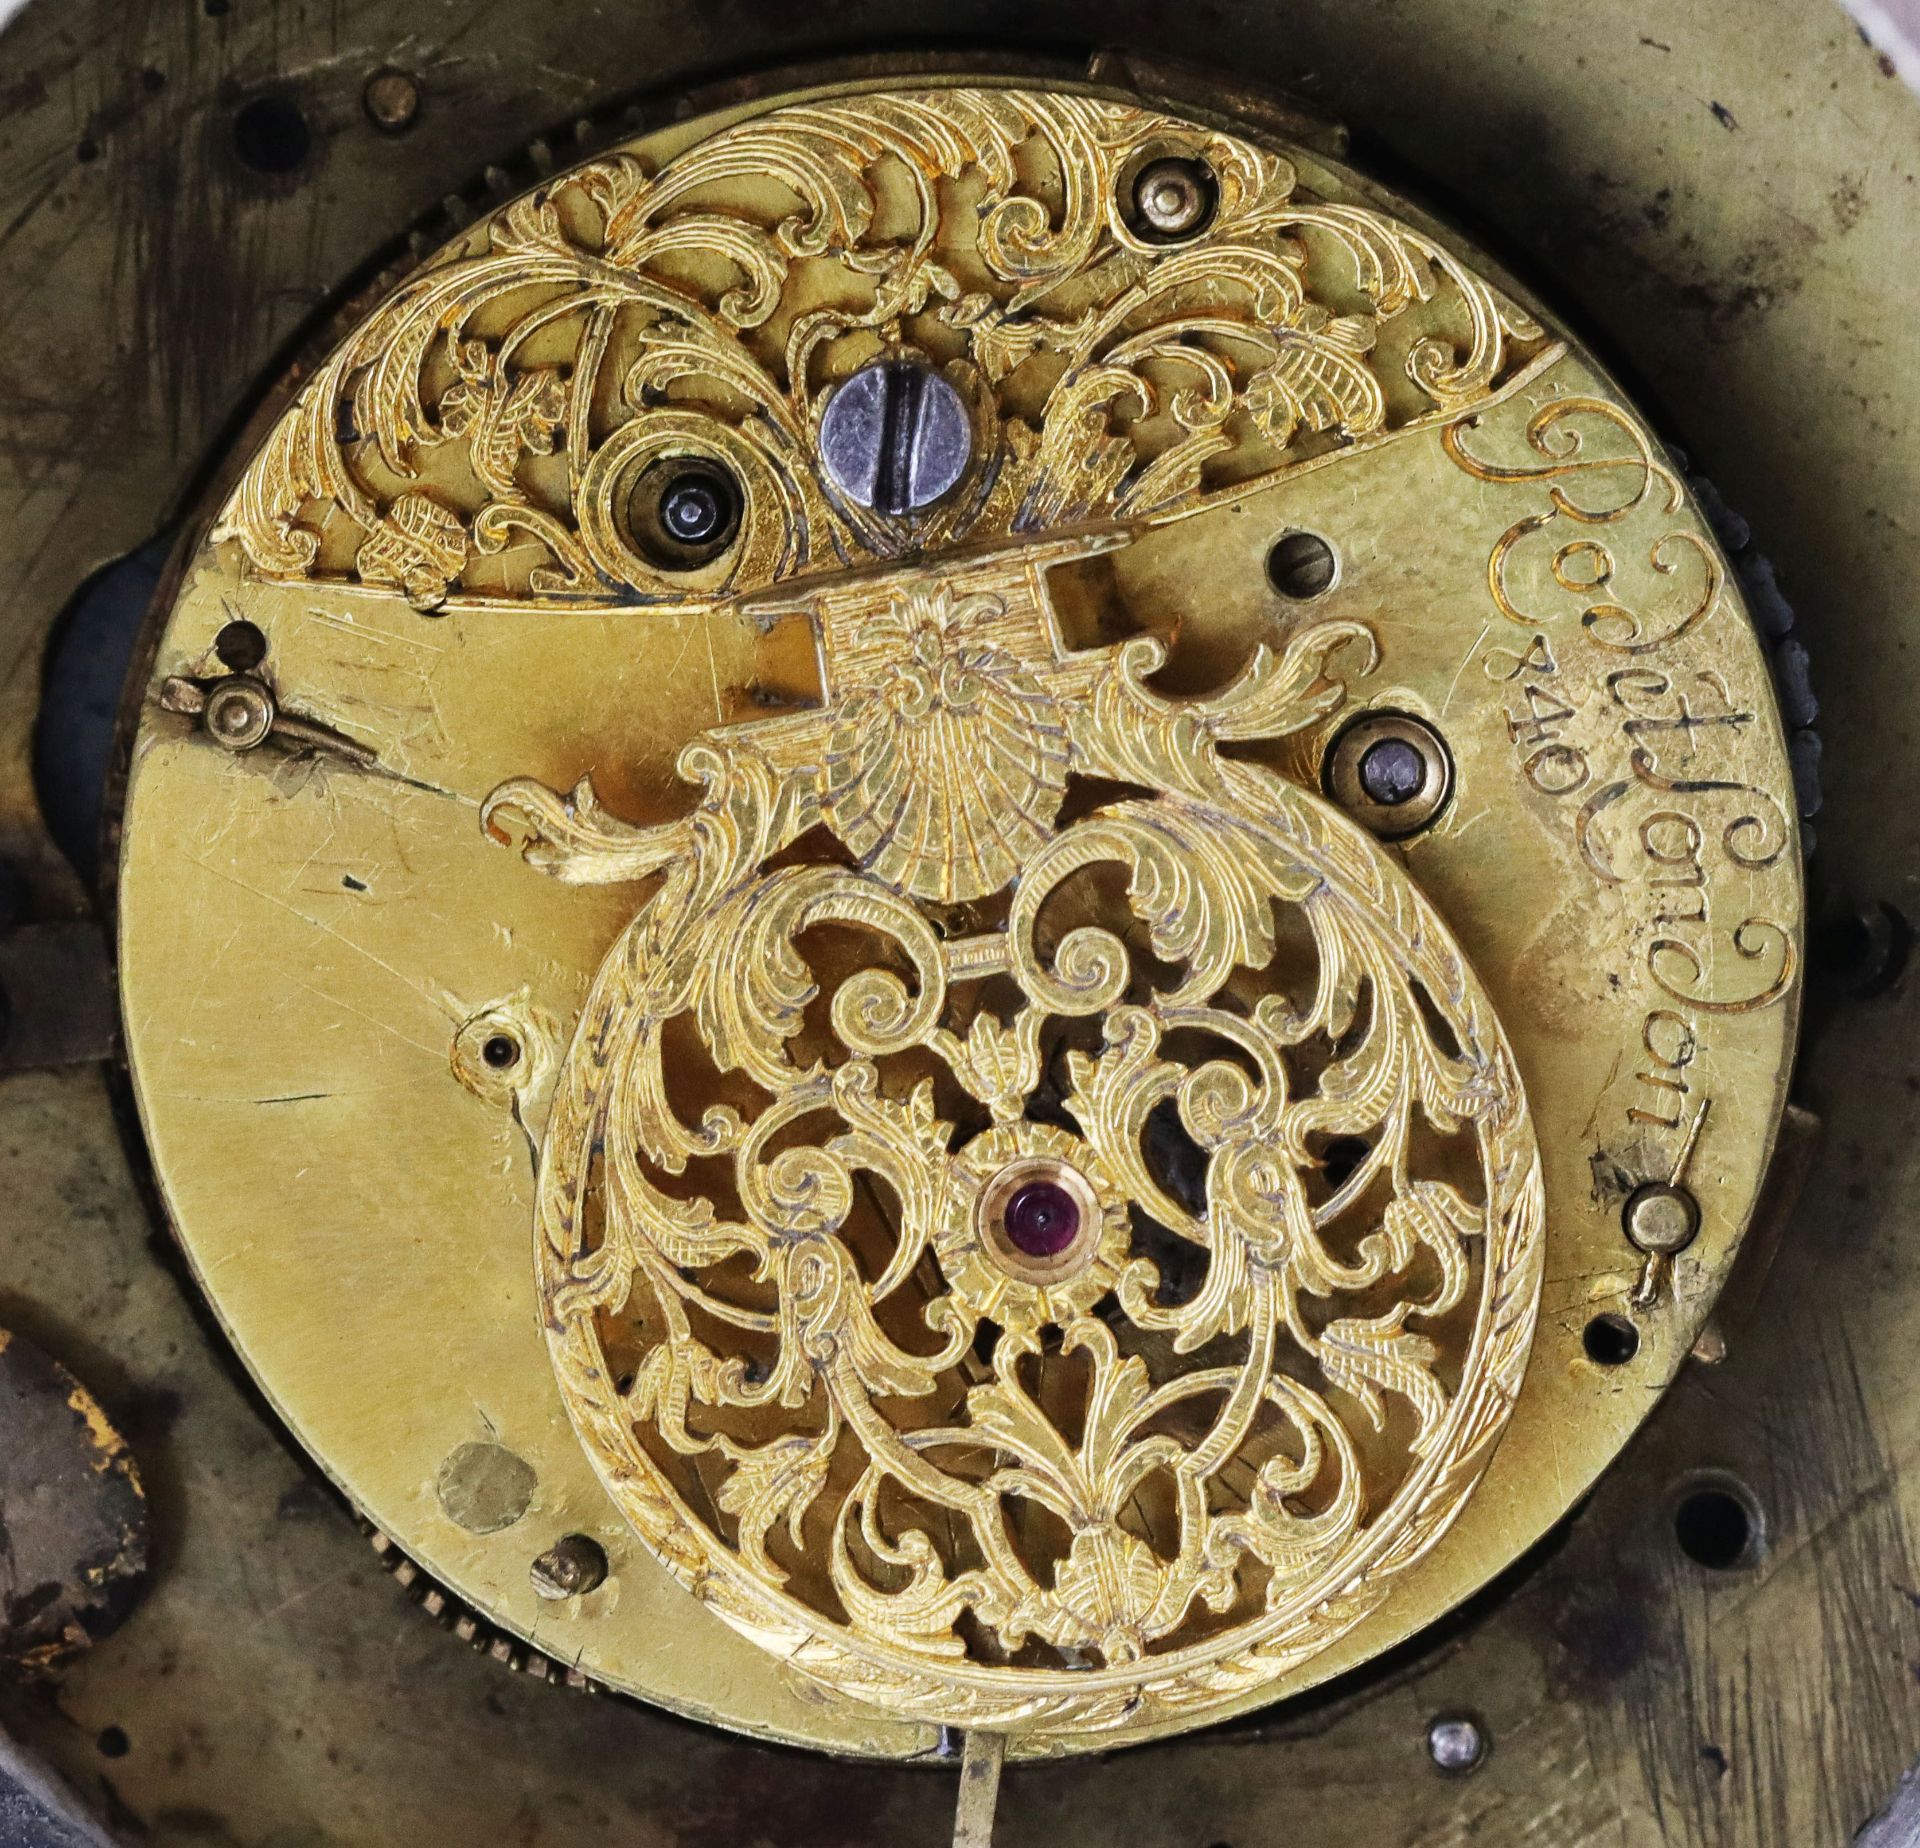 Uhrenweibchen, Mitte 19. Jh., Holz, farbig gefasst: Frauenfigur neben Uhr stehend, H. 37 cm. Uhr mit - Bild 3 aus 4